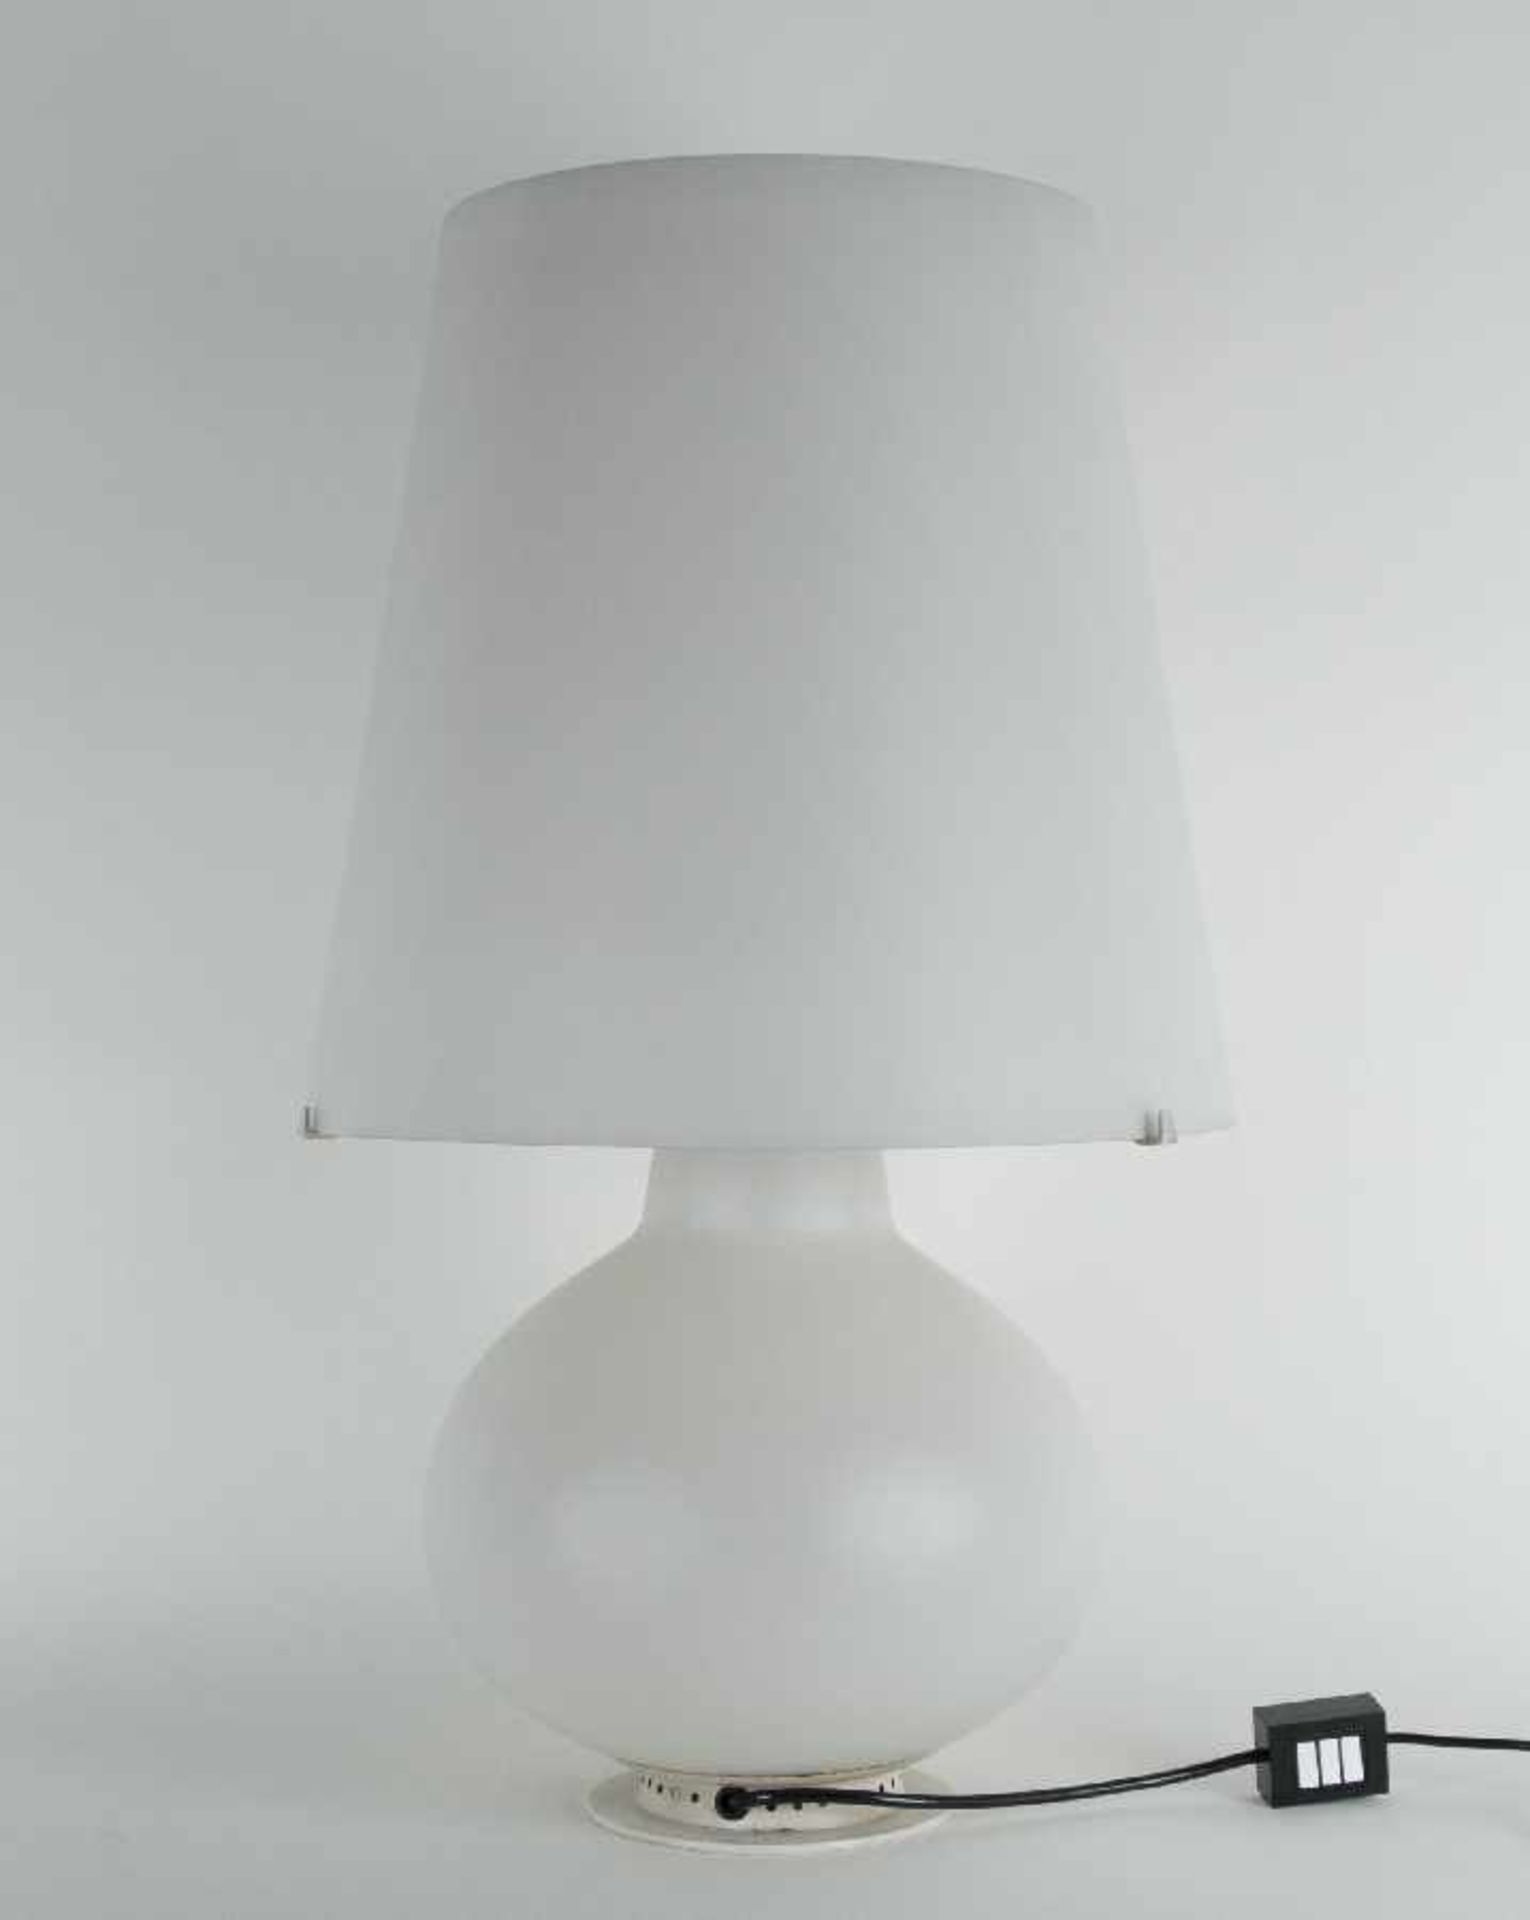 Max Ingrand1908 in Bressuire - 1969 ParisTischlampe "Fontana" Modell 1853Milchglas und Metall,